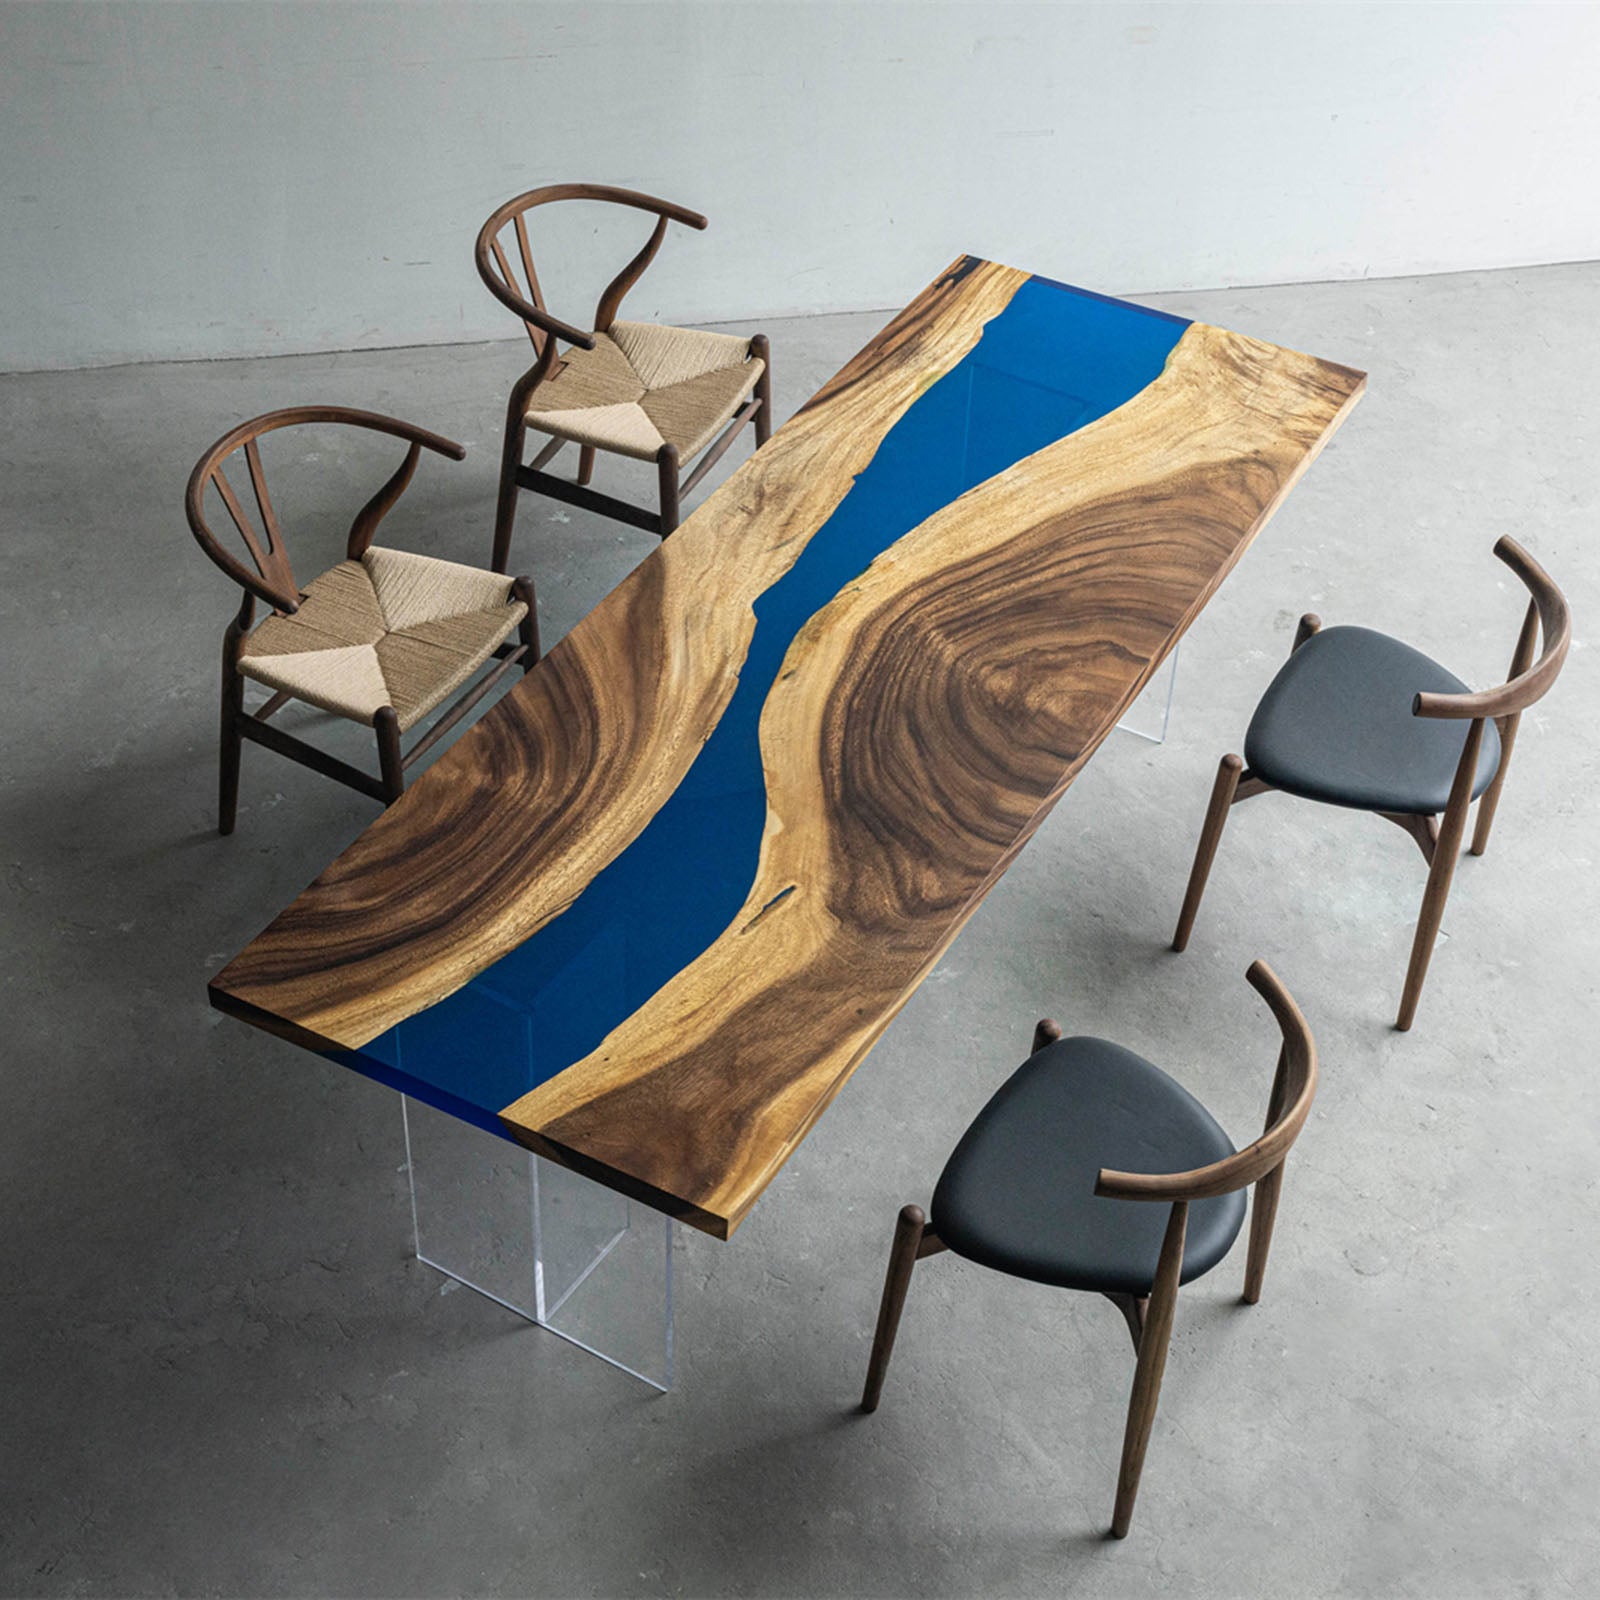 KAZANA Walnut Wood Epoxy River Dining Table Length 94-7/8 Inches